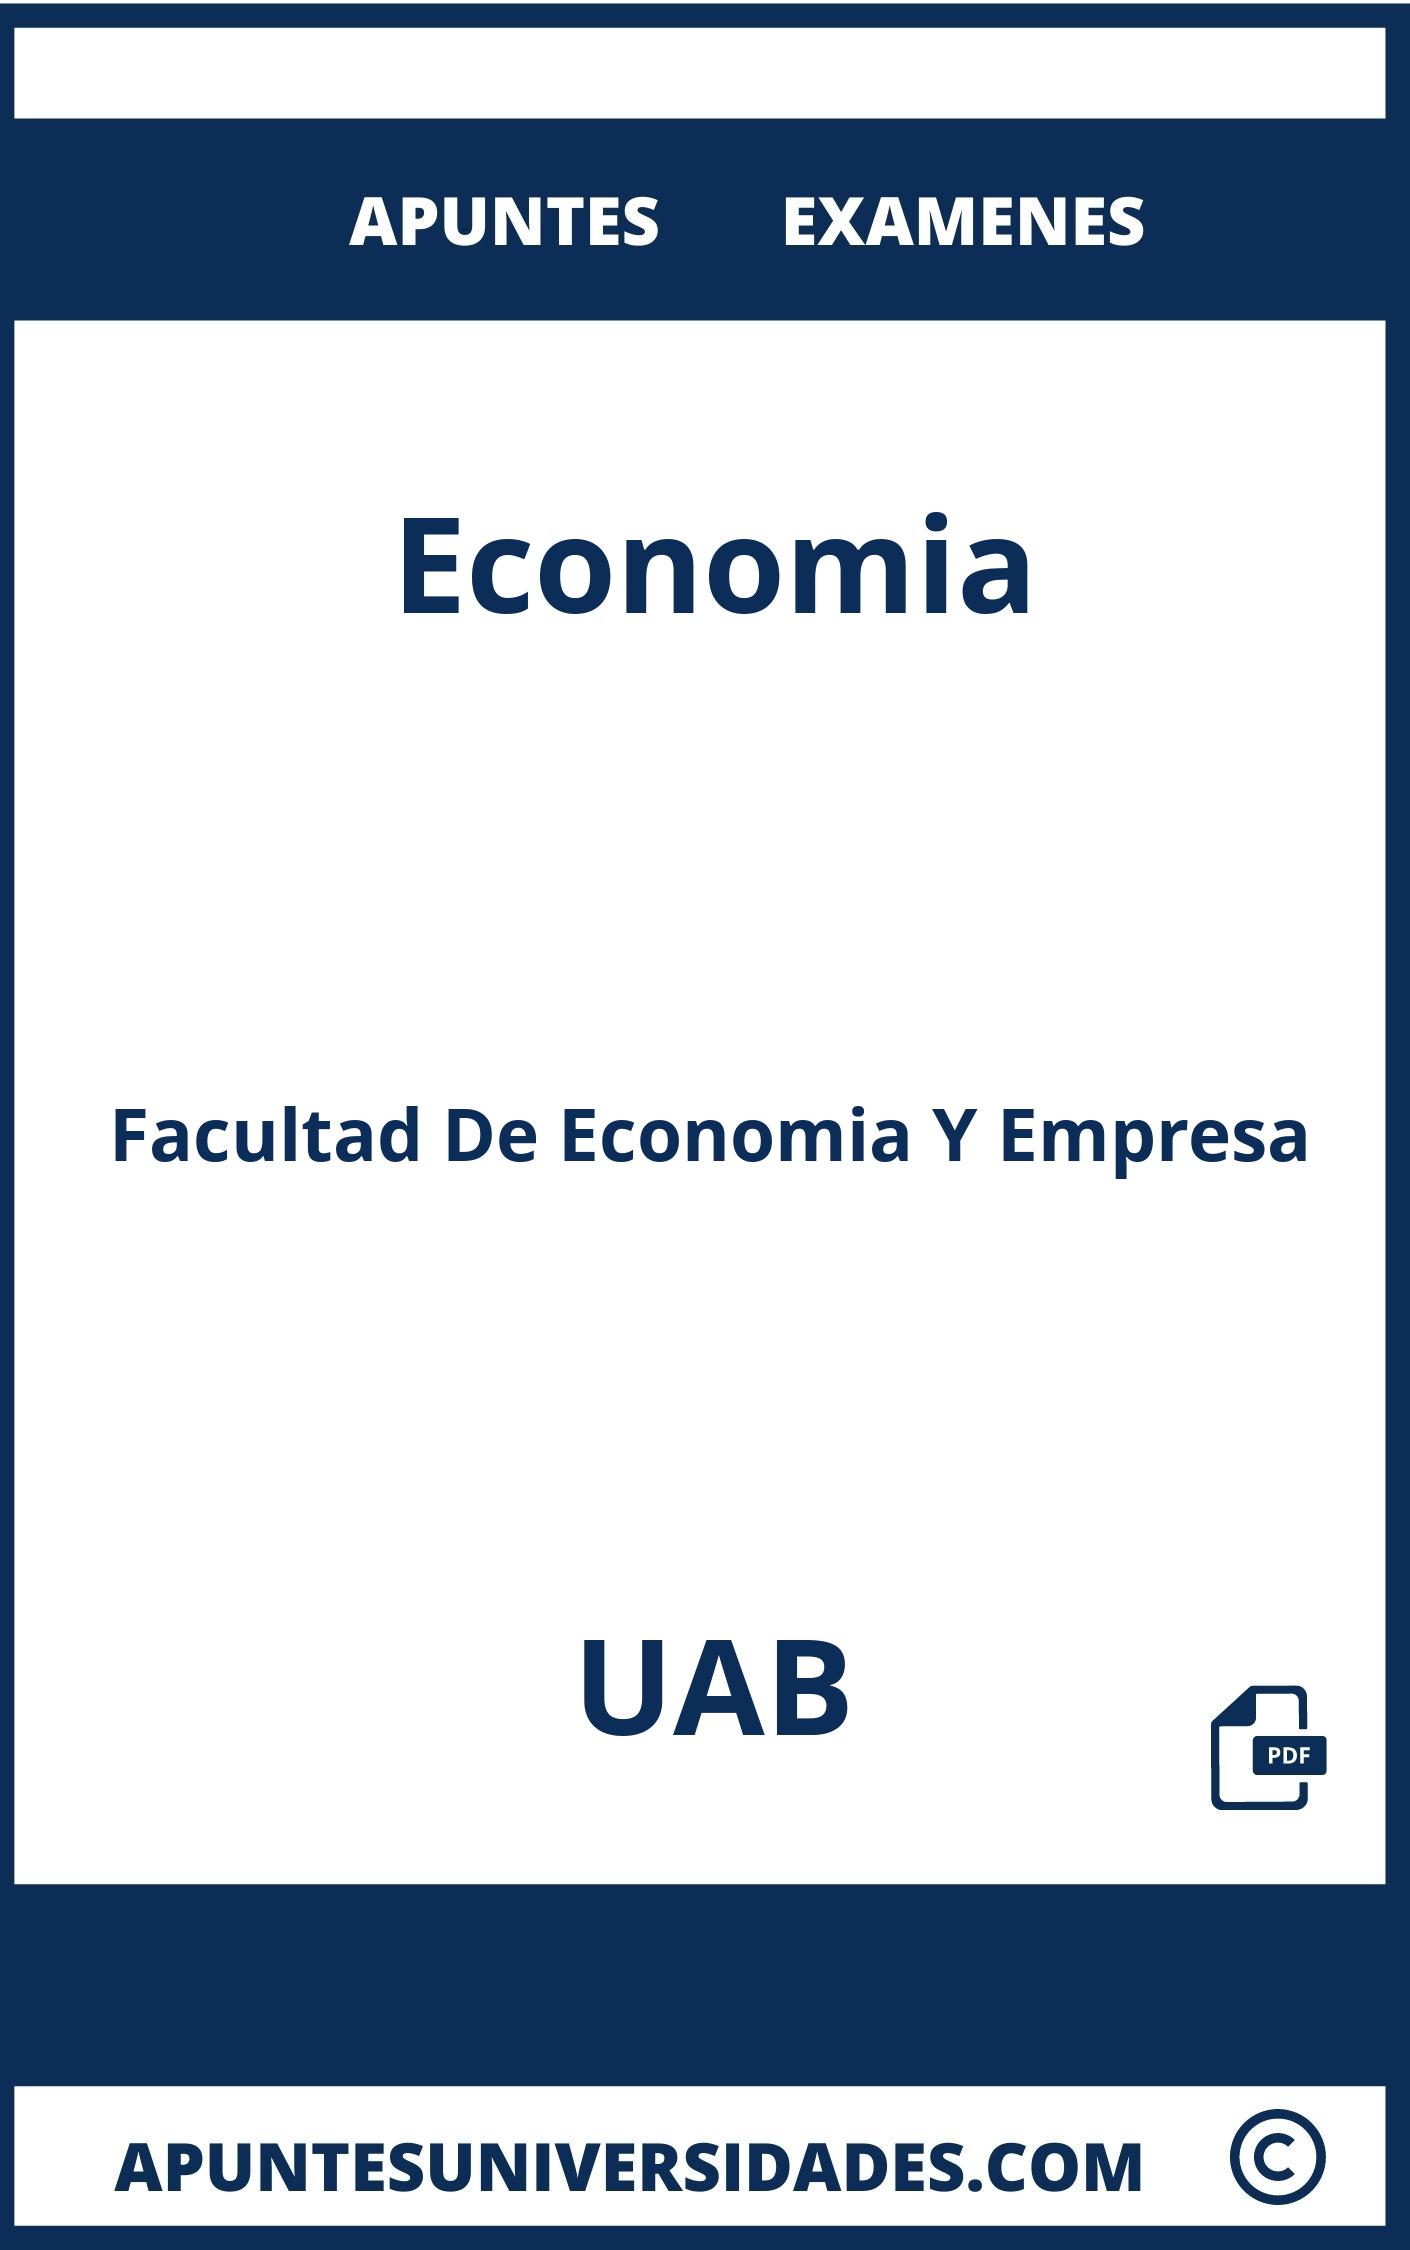 Apuntes y Examenes Economia UAB